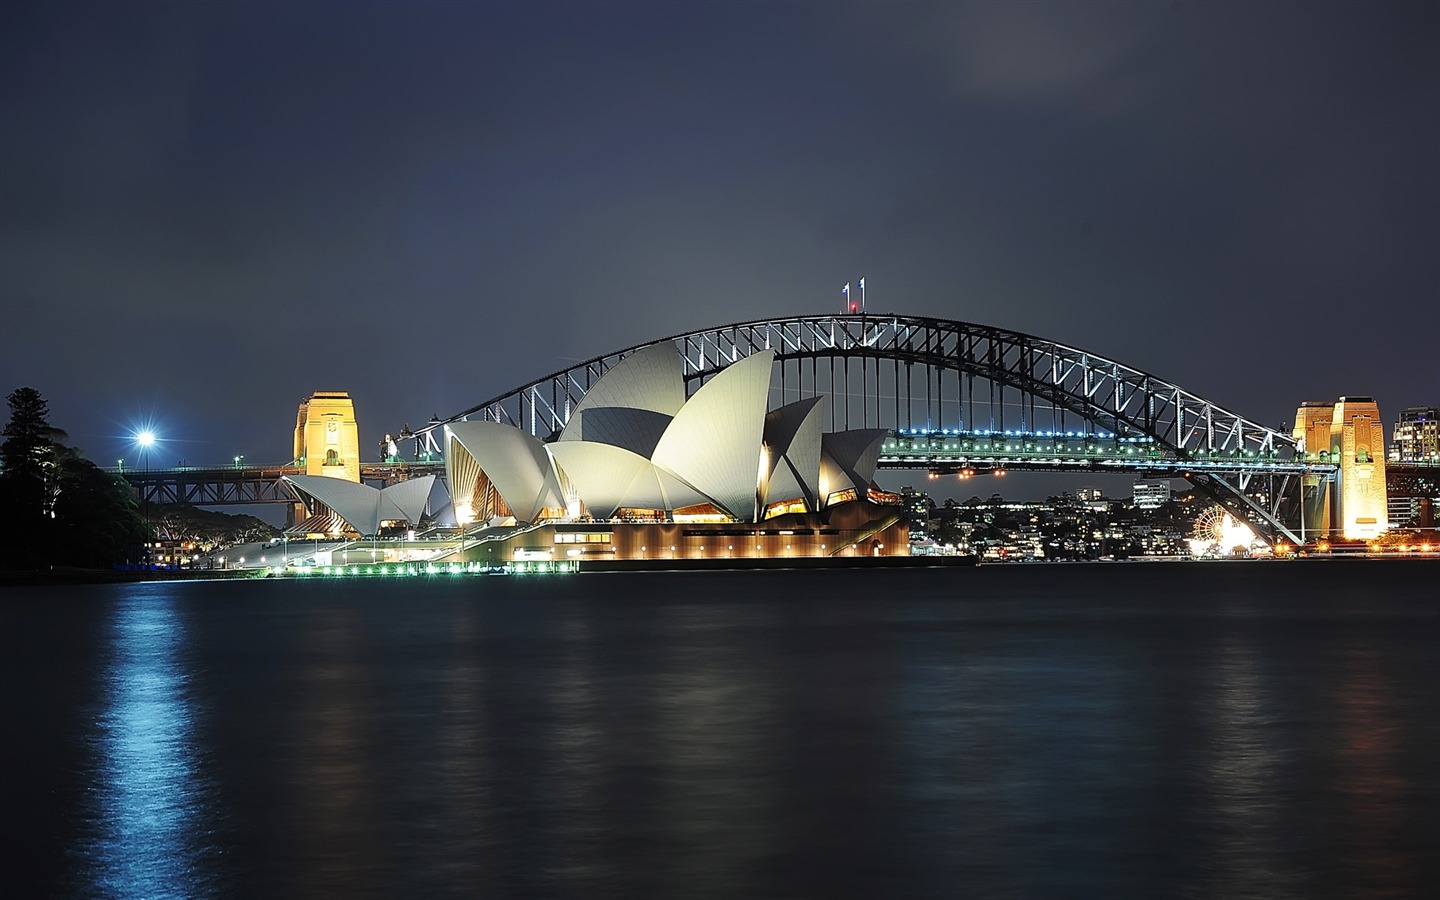 シドニーの風景のHD画像 #14 - 1440x900